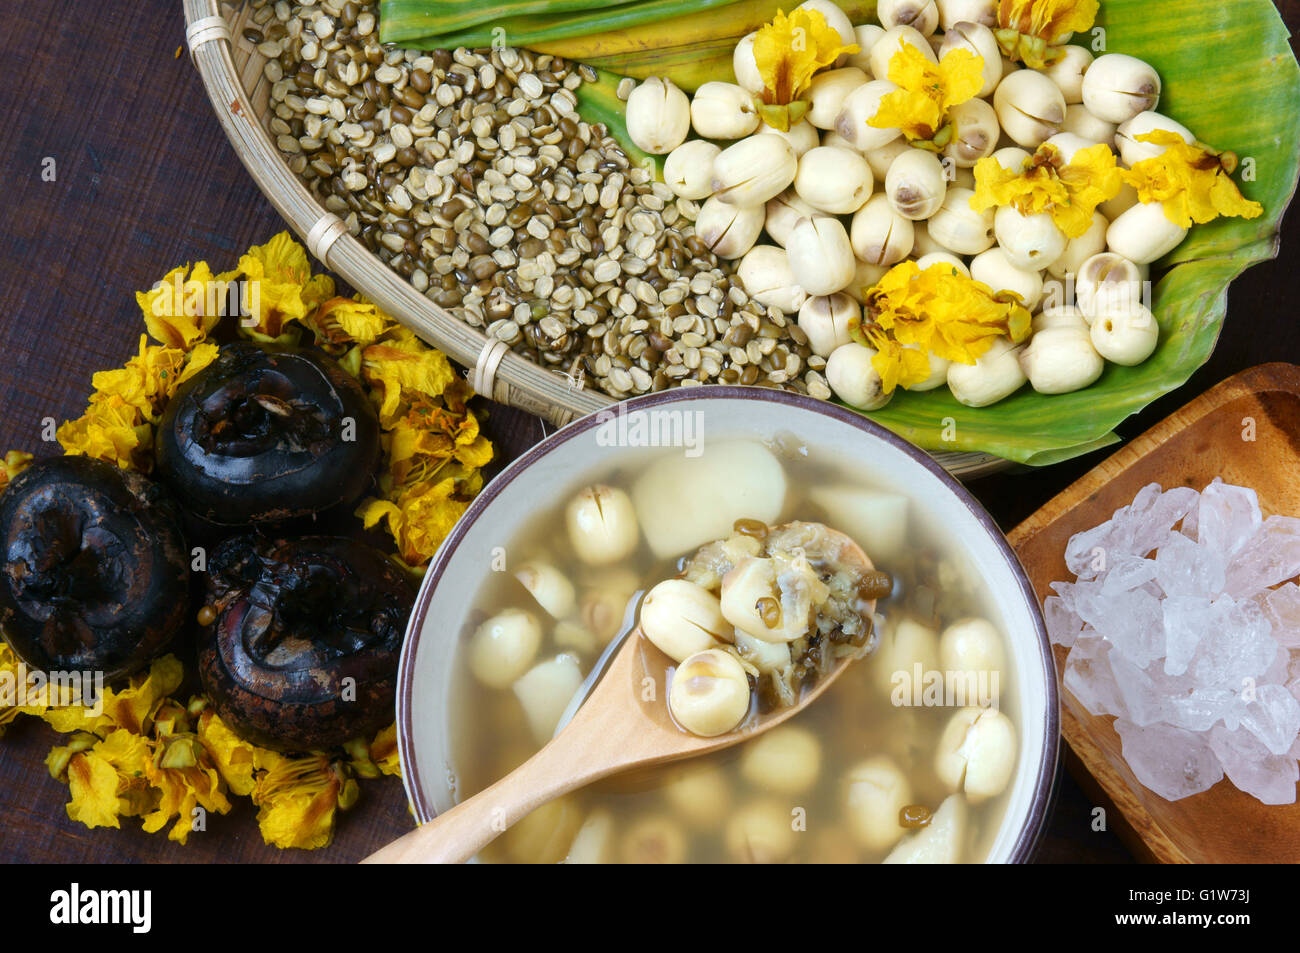 Vietnam, les patates bouillies de graines de lotus, lotus Ingrédients : Haricots, les haricots mungo, la châtaigne d'eau et le sucre candy. Vietnam dessert Banque D'Images